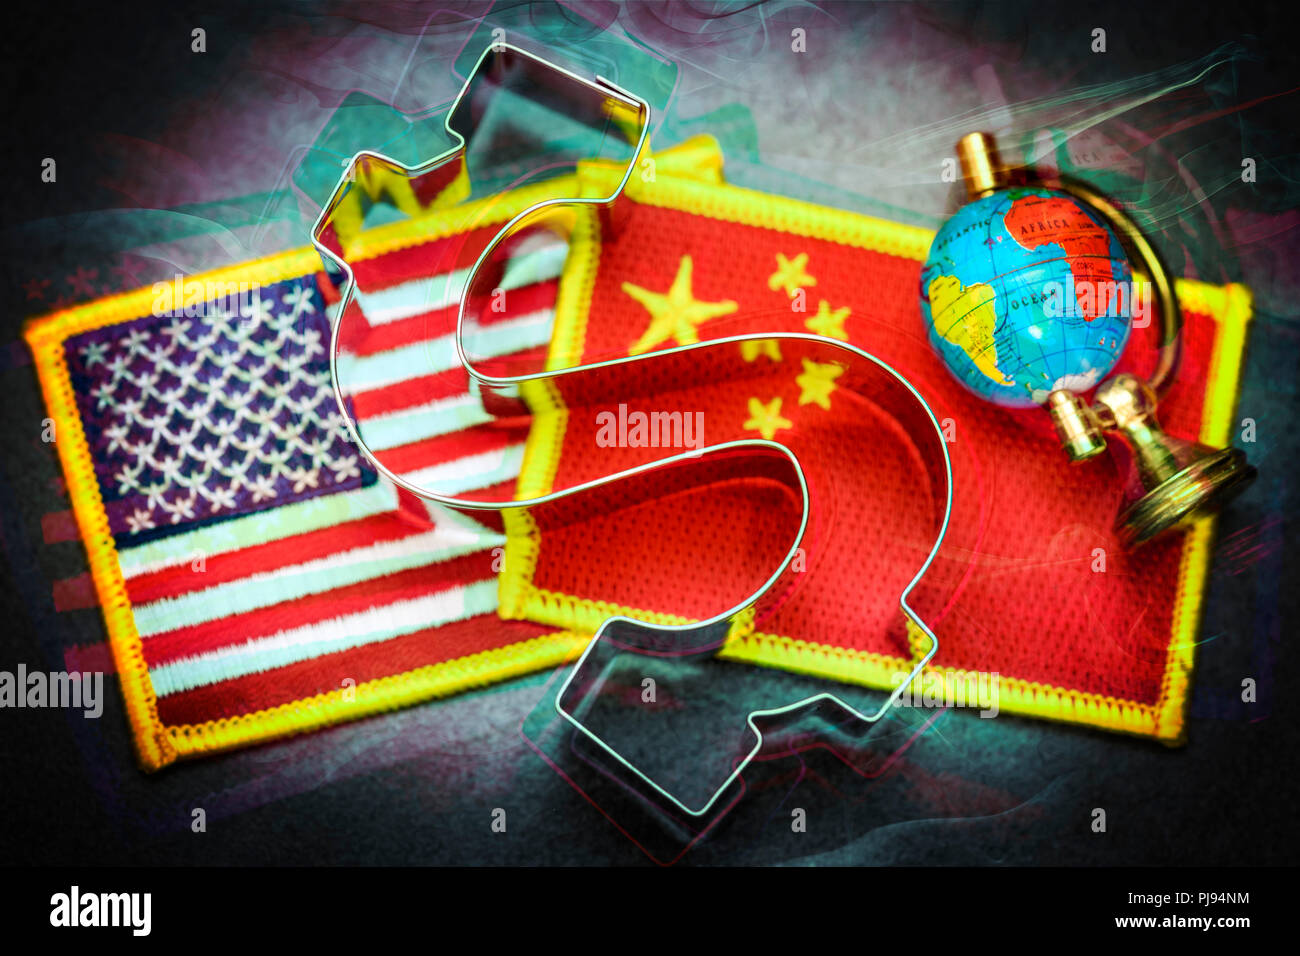 Dollar signs on the flags of the USA and China with globe, commercial war, Dollarzeichen auf den Fahnen von USA und China mit Globus, Handelskrieg Stock Photo